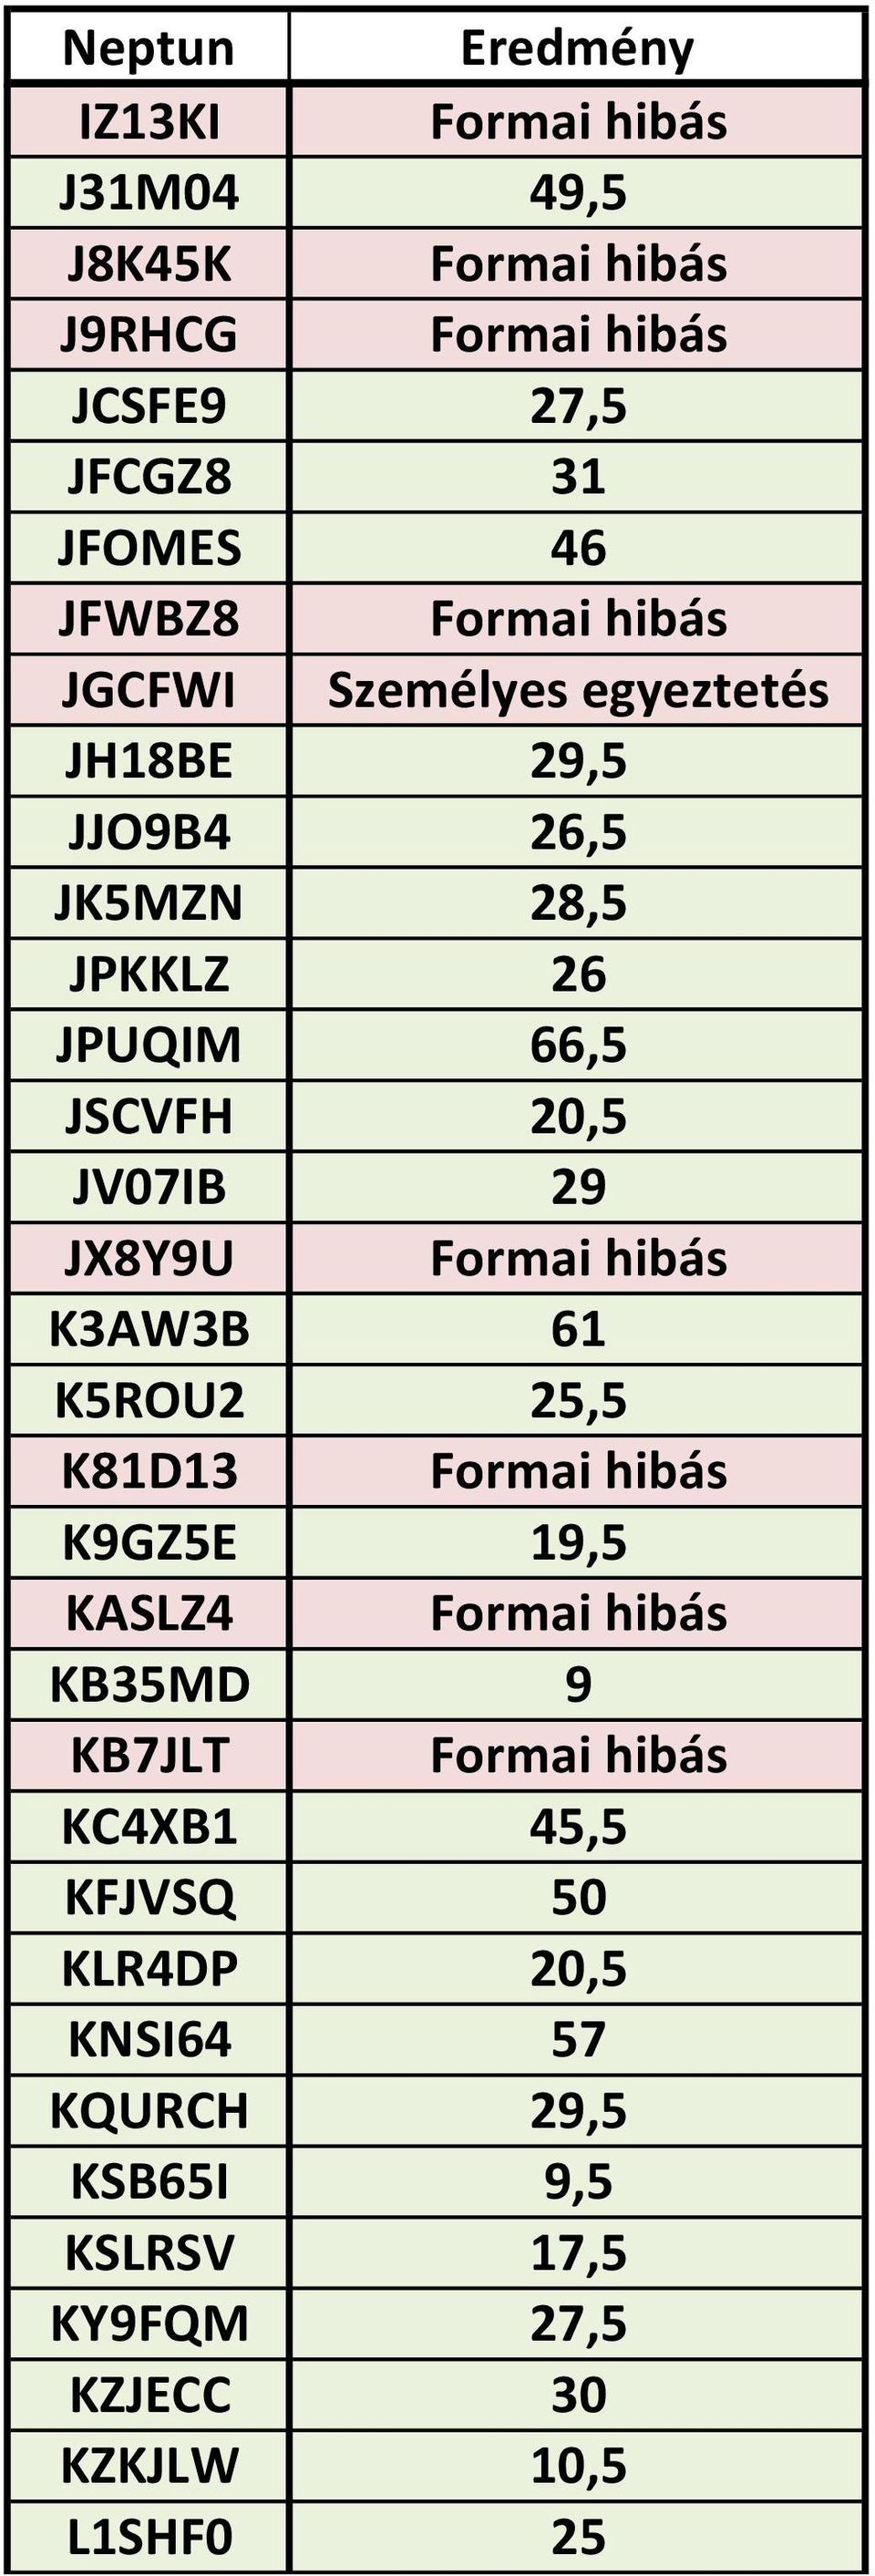 JX8Y9U Formai hibás K3AW3B 61 K5ROU2 25,5 K81D13 Formai hibás K9GZ5E 19,5 KASLZ4 Formai hibás KB35MD 9 KB7JLT Formai